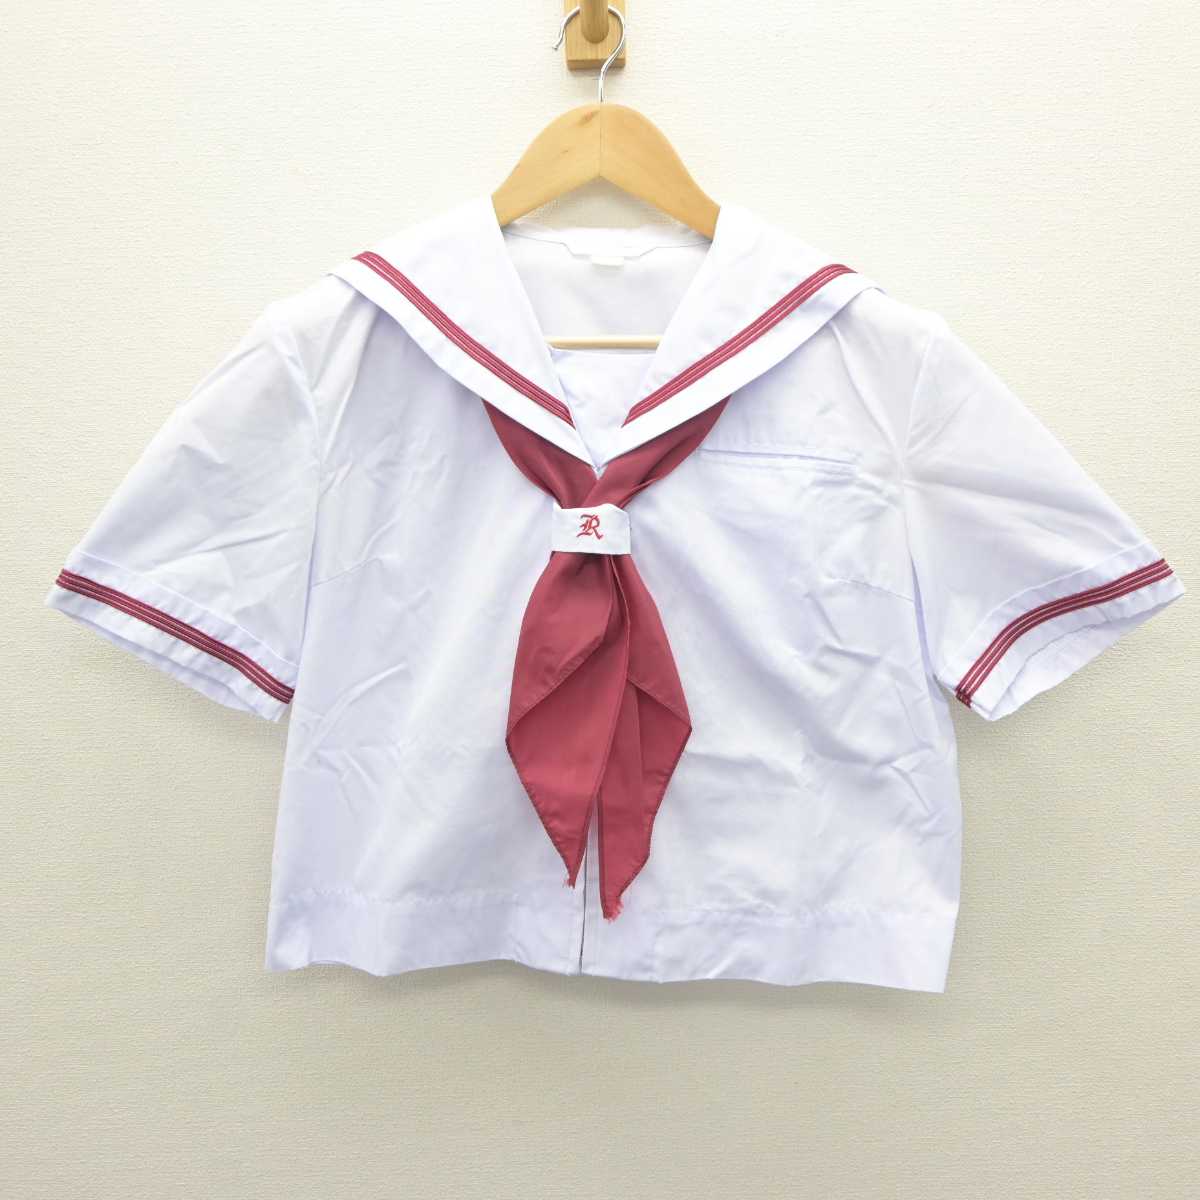 【中古】東京都 両国中学校 女子制服 3点 (セーラー服・スカート) sf063121